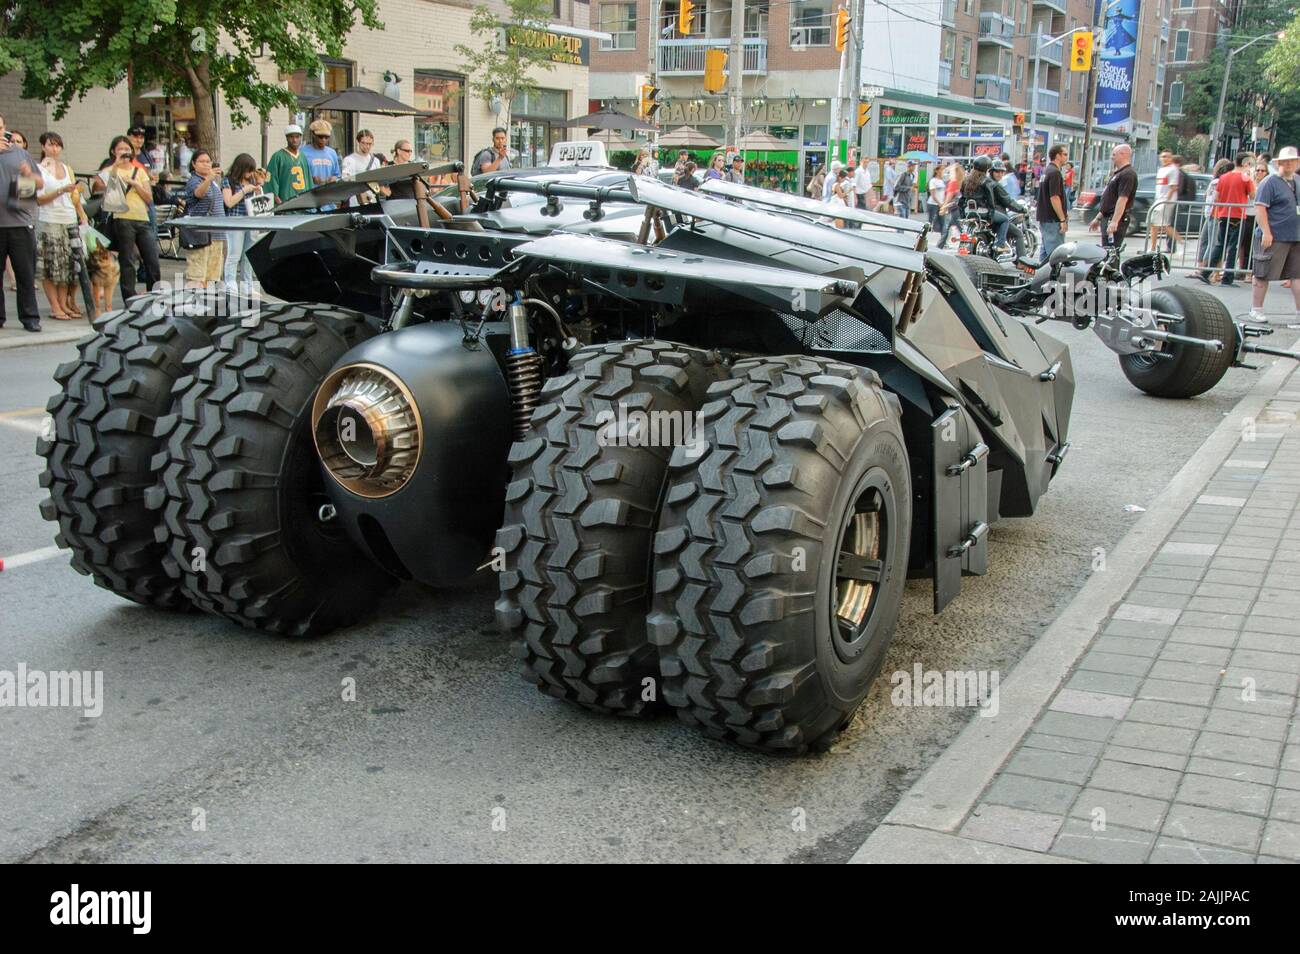 Moto Batpod batmobile et utilisé dans la suite de Batman The Dark Knight, visiter la ville de Toronto pour une campagne de promotion. Banque D'Images